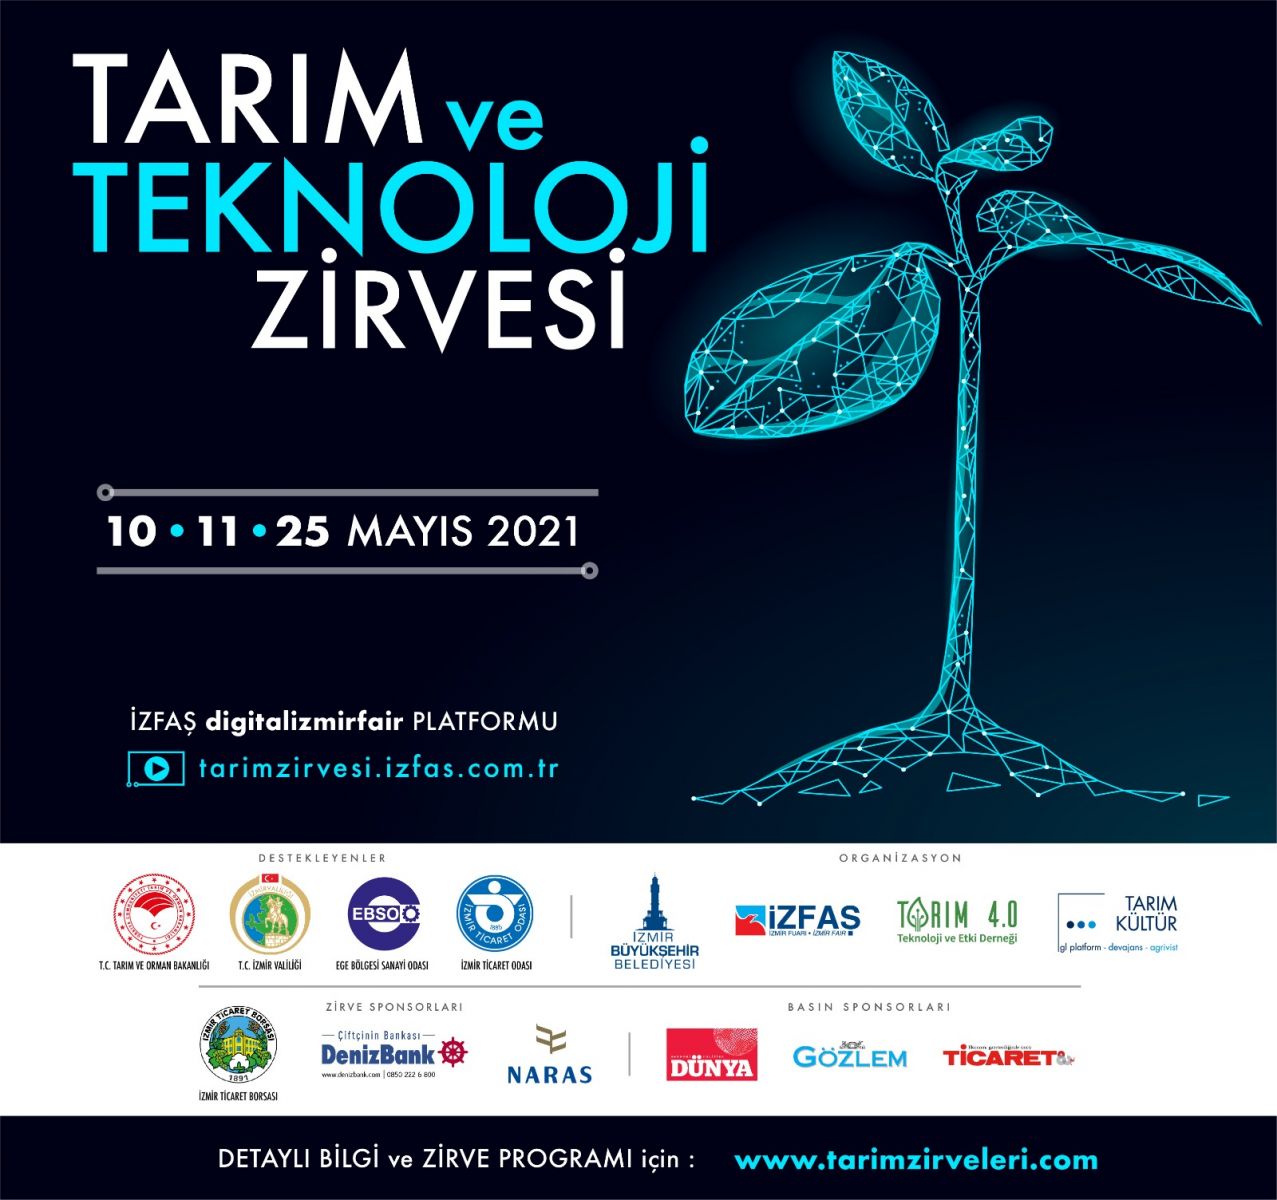 Tarım ve Teknoloji Zirvesi 10-11-25 Mayıs Tarihlerinde